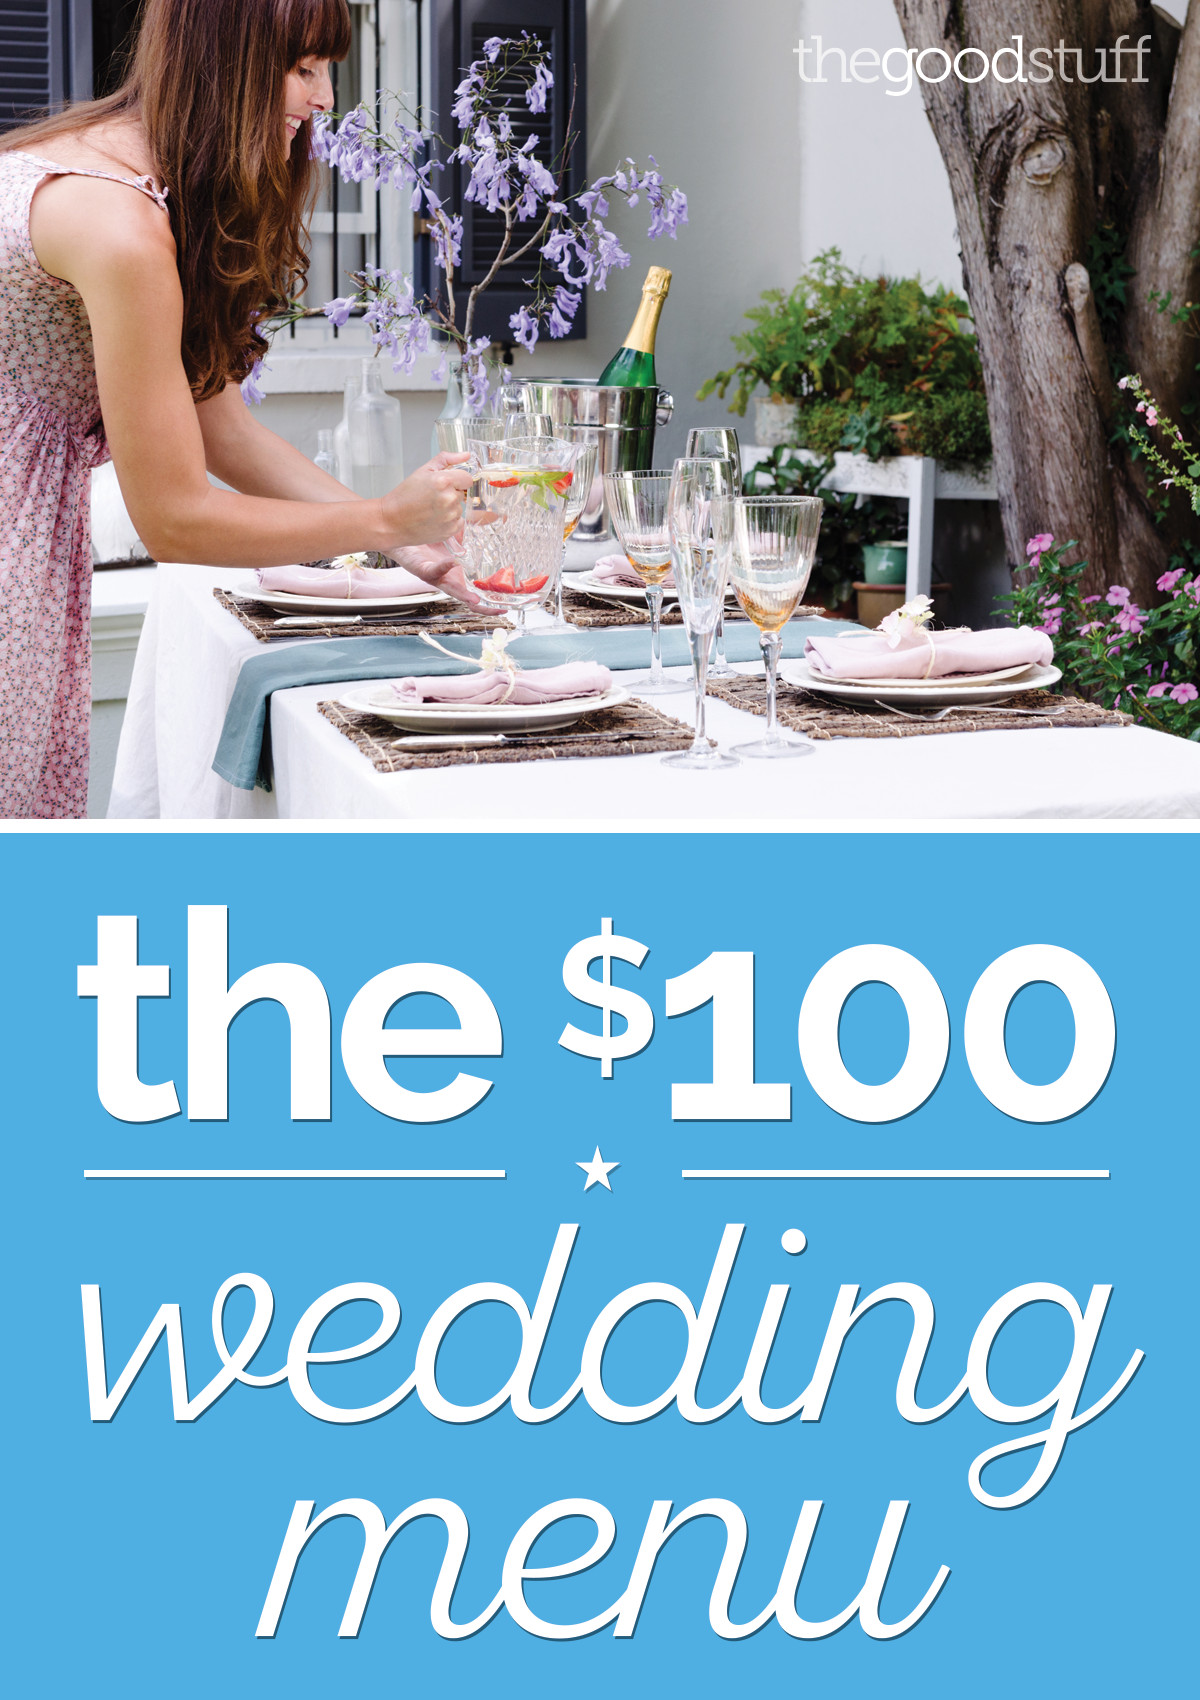 DIY Wedding Buffet Menu Ideas
 A DIY Wedding Menu for Just $100 thegoodstuff